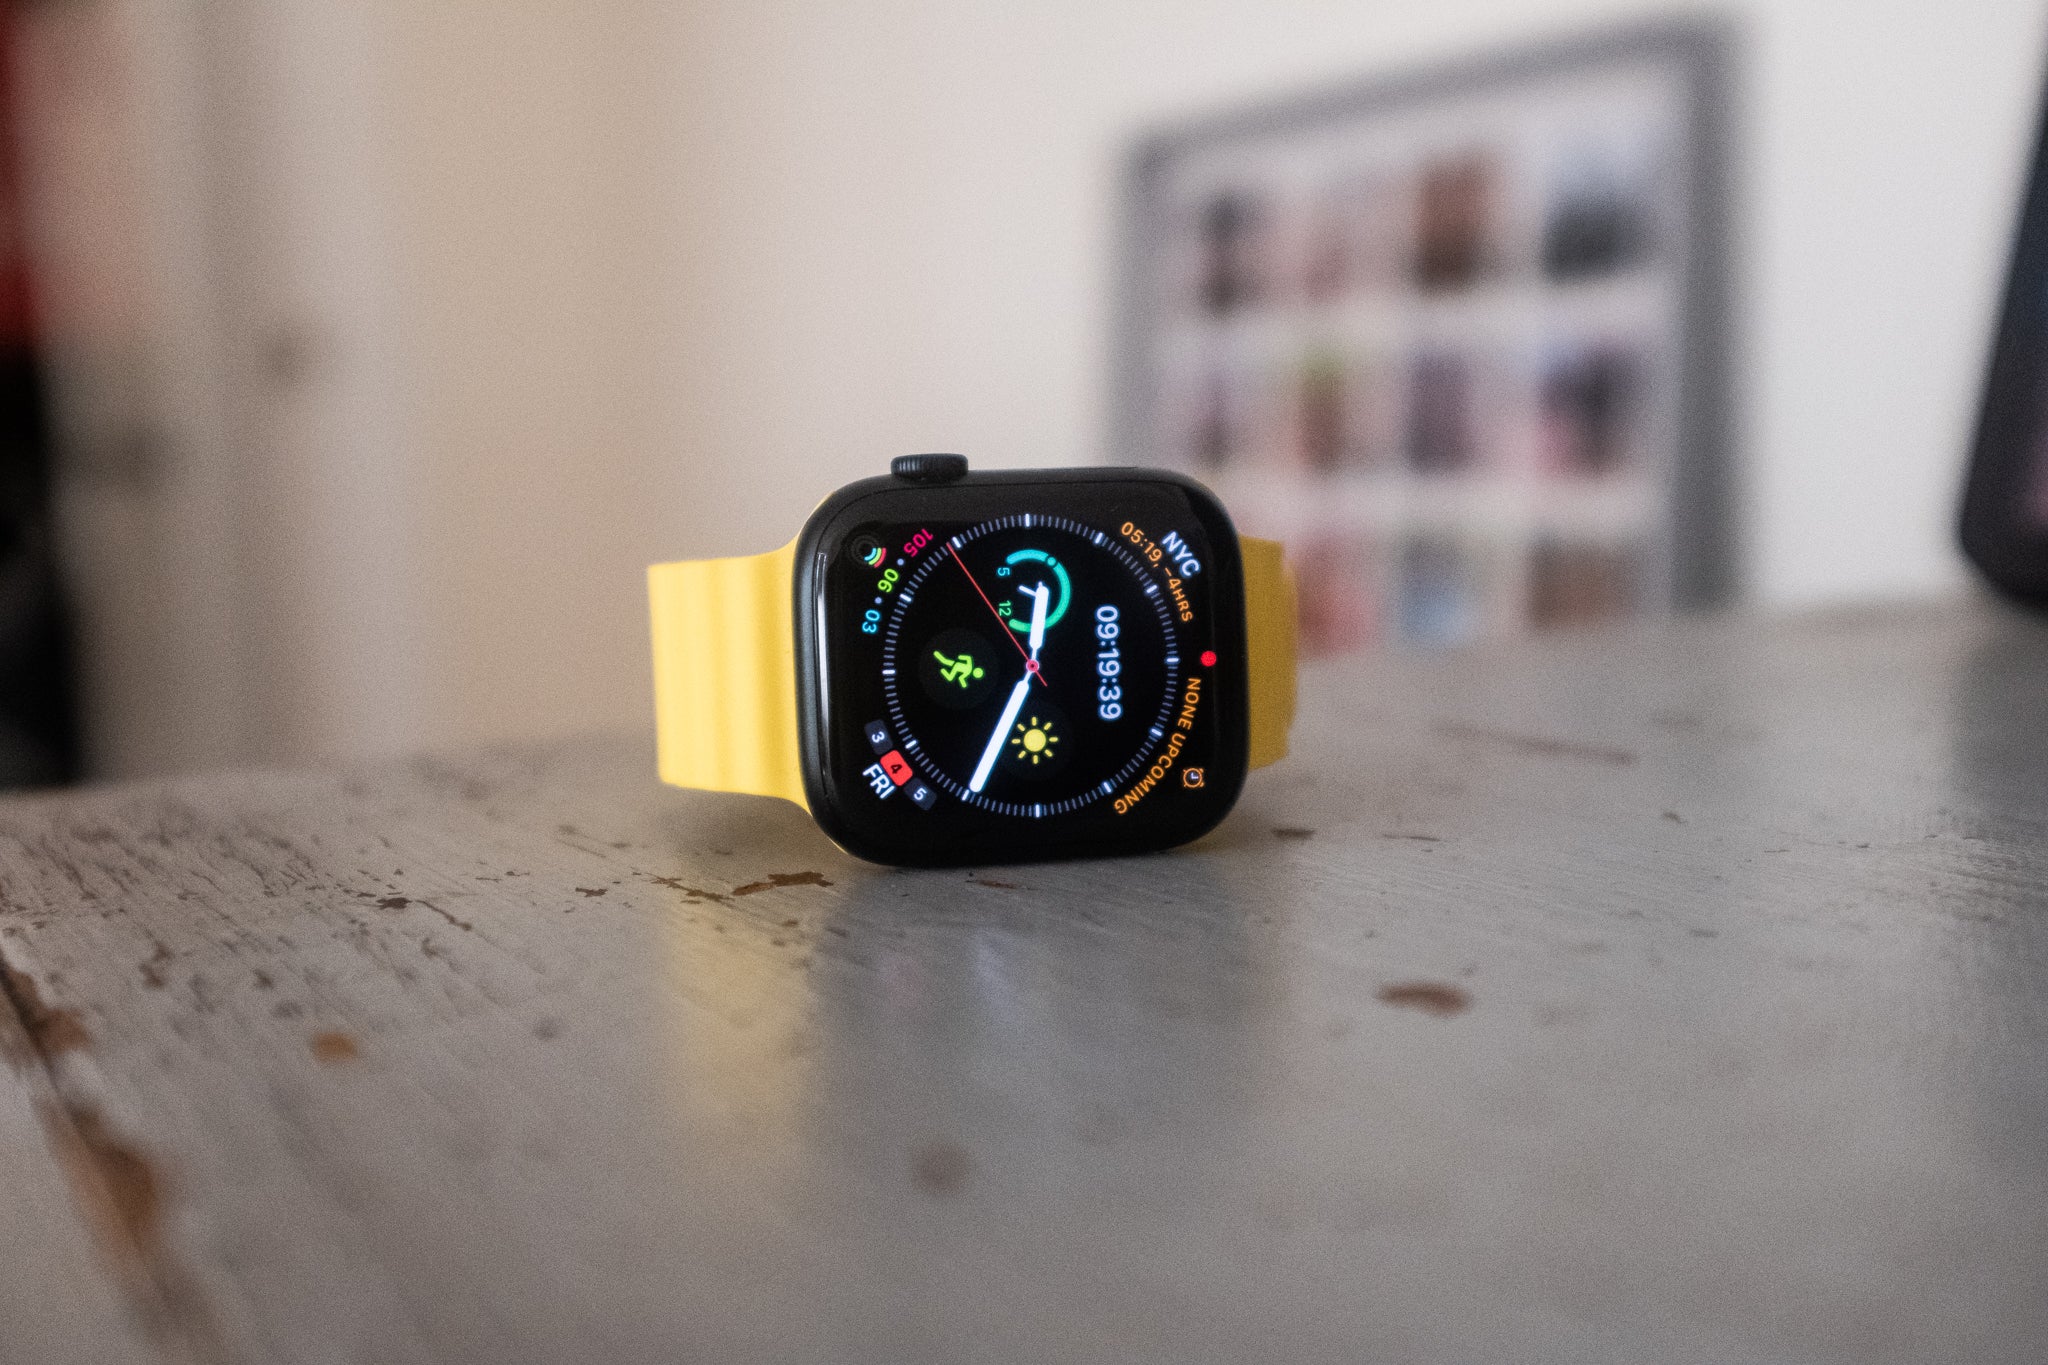 2. Hướng dẫn cách sử dụng Apple Watch để có những trải nghiệm tối đa